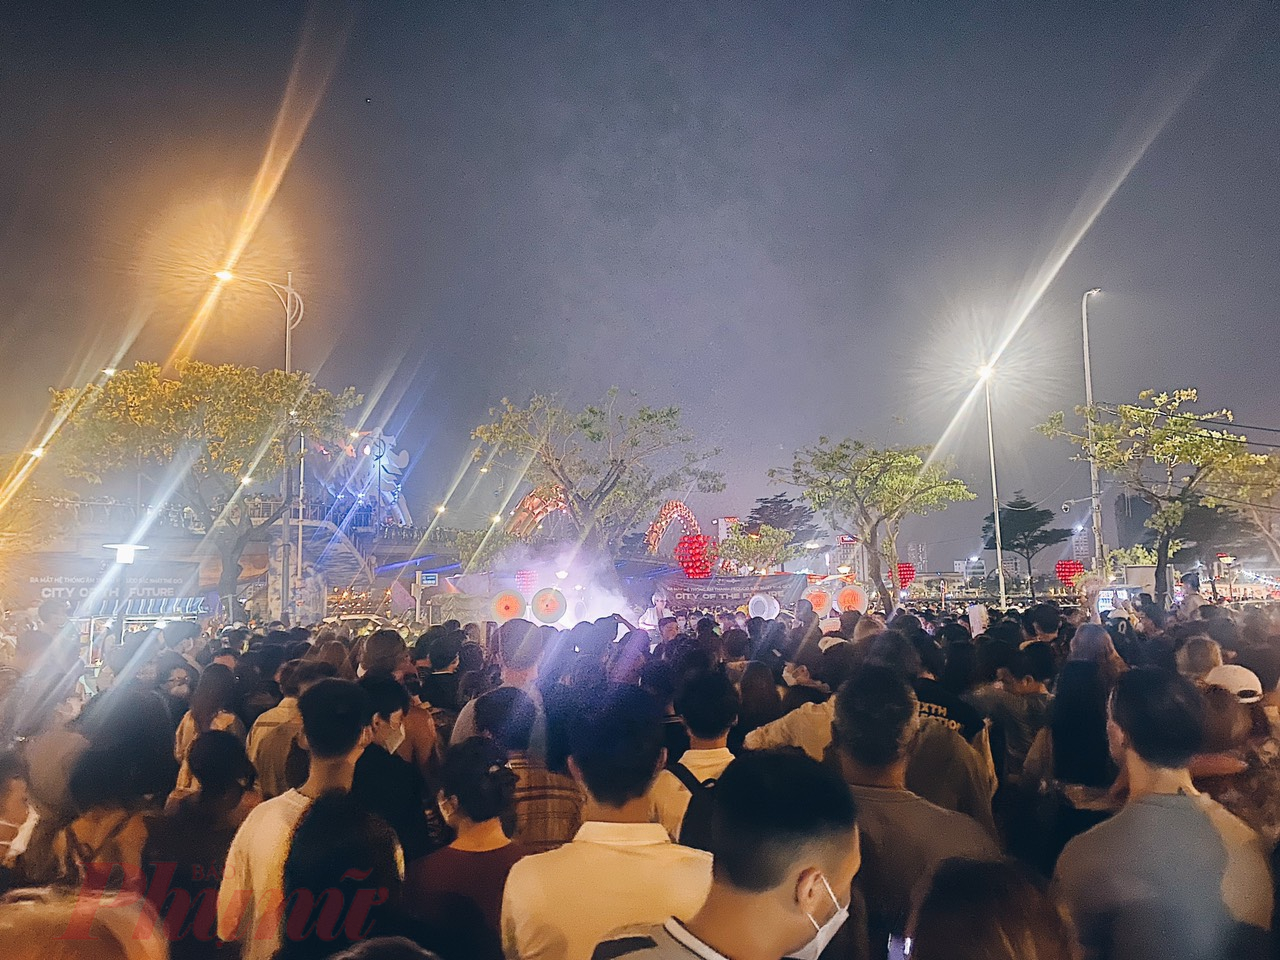 Đại tiệc nhạc điện tử mang tên “Danang – The City of Future” bên cầu Rồng đêm cuối tuần thu hút hàng ngàn bạn trẻ.